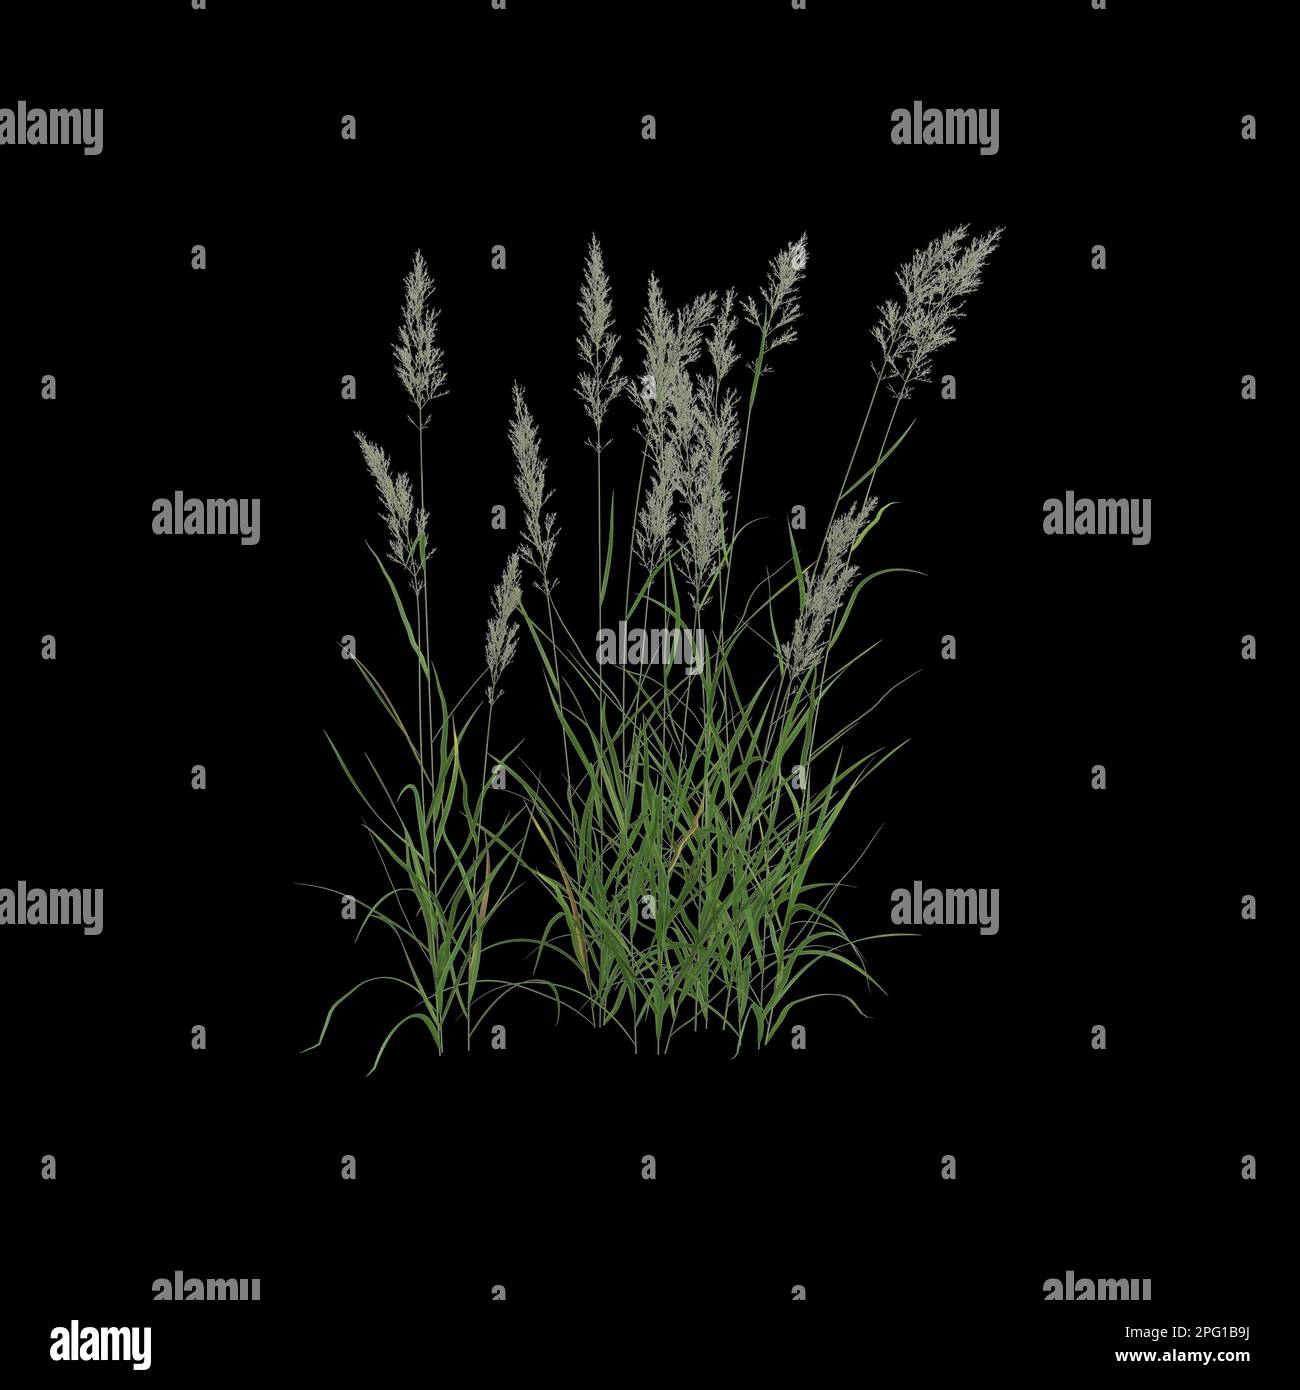 3d illustration of calamagrostis arundinacea bush isolated on black background Stock Photo